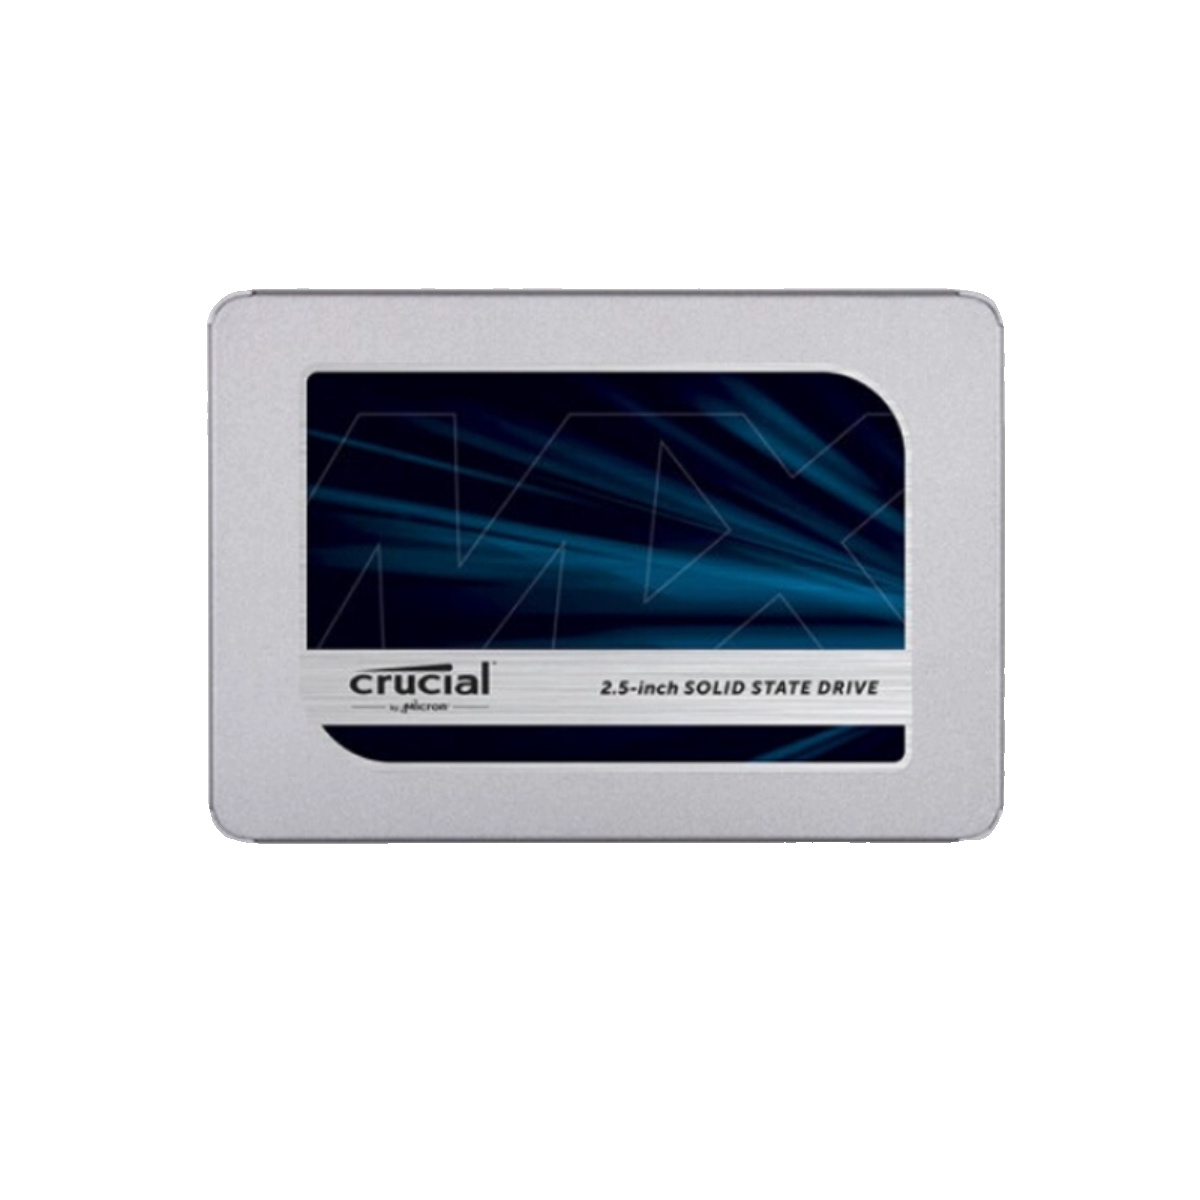 CRUCIAL/镁光 mx500 固态硬盘 SATA 接口2.5寸 - 图2